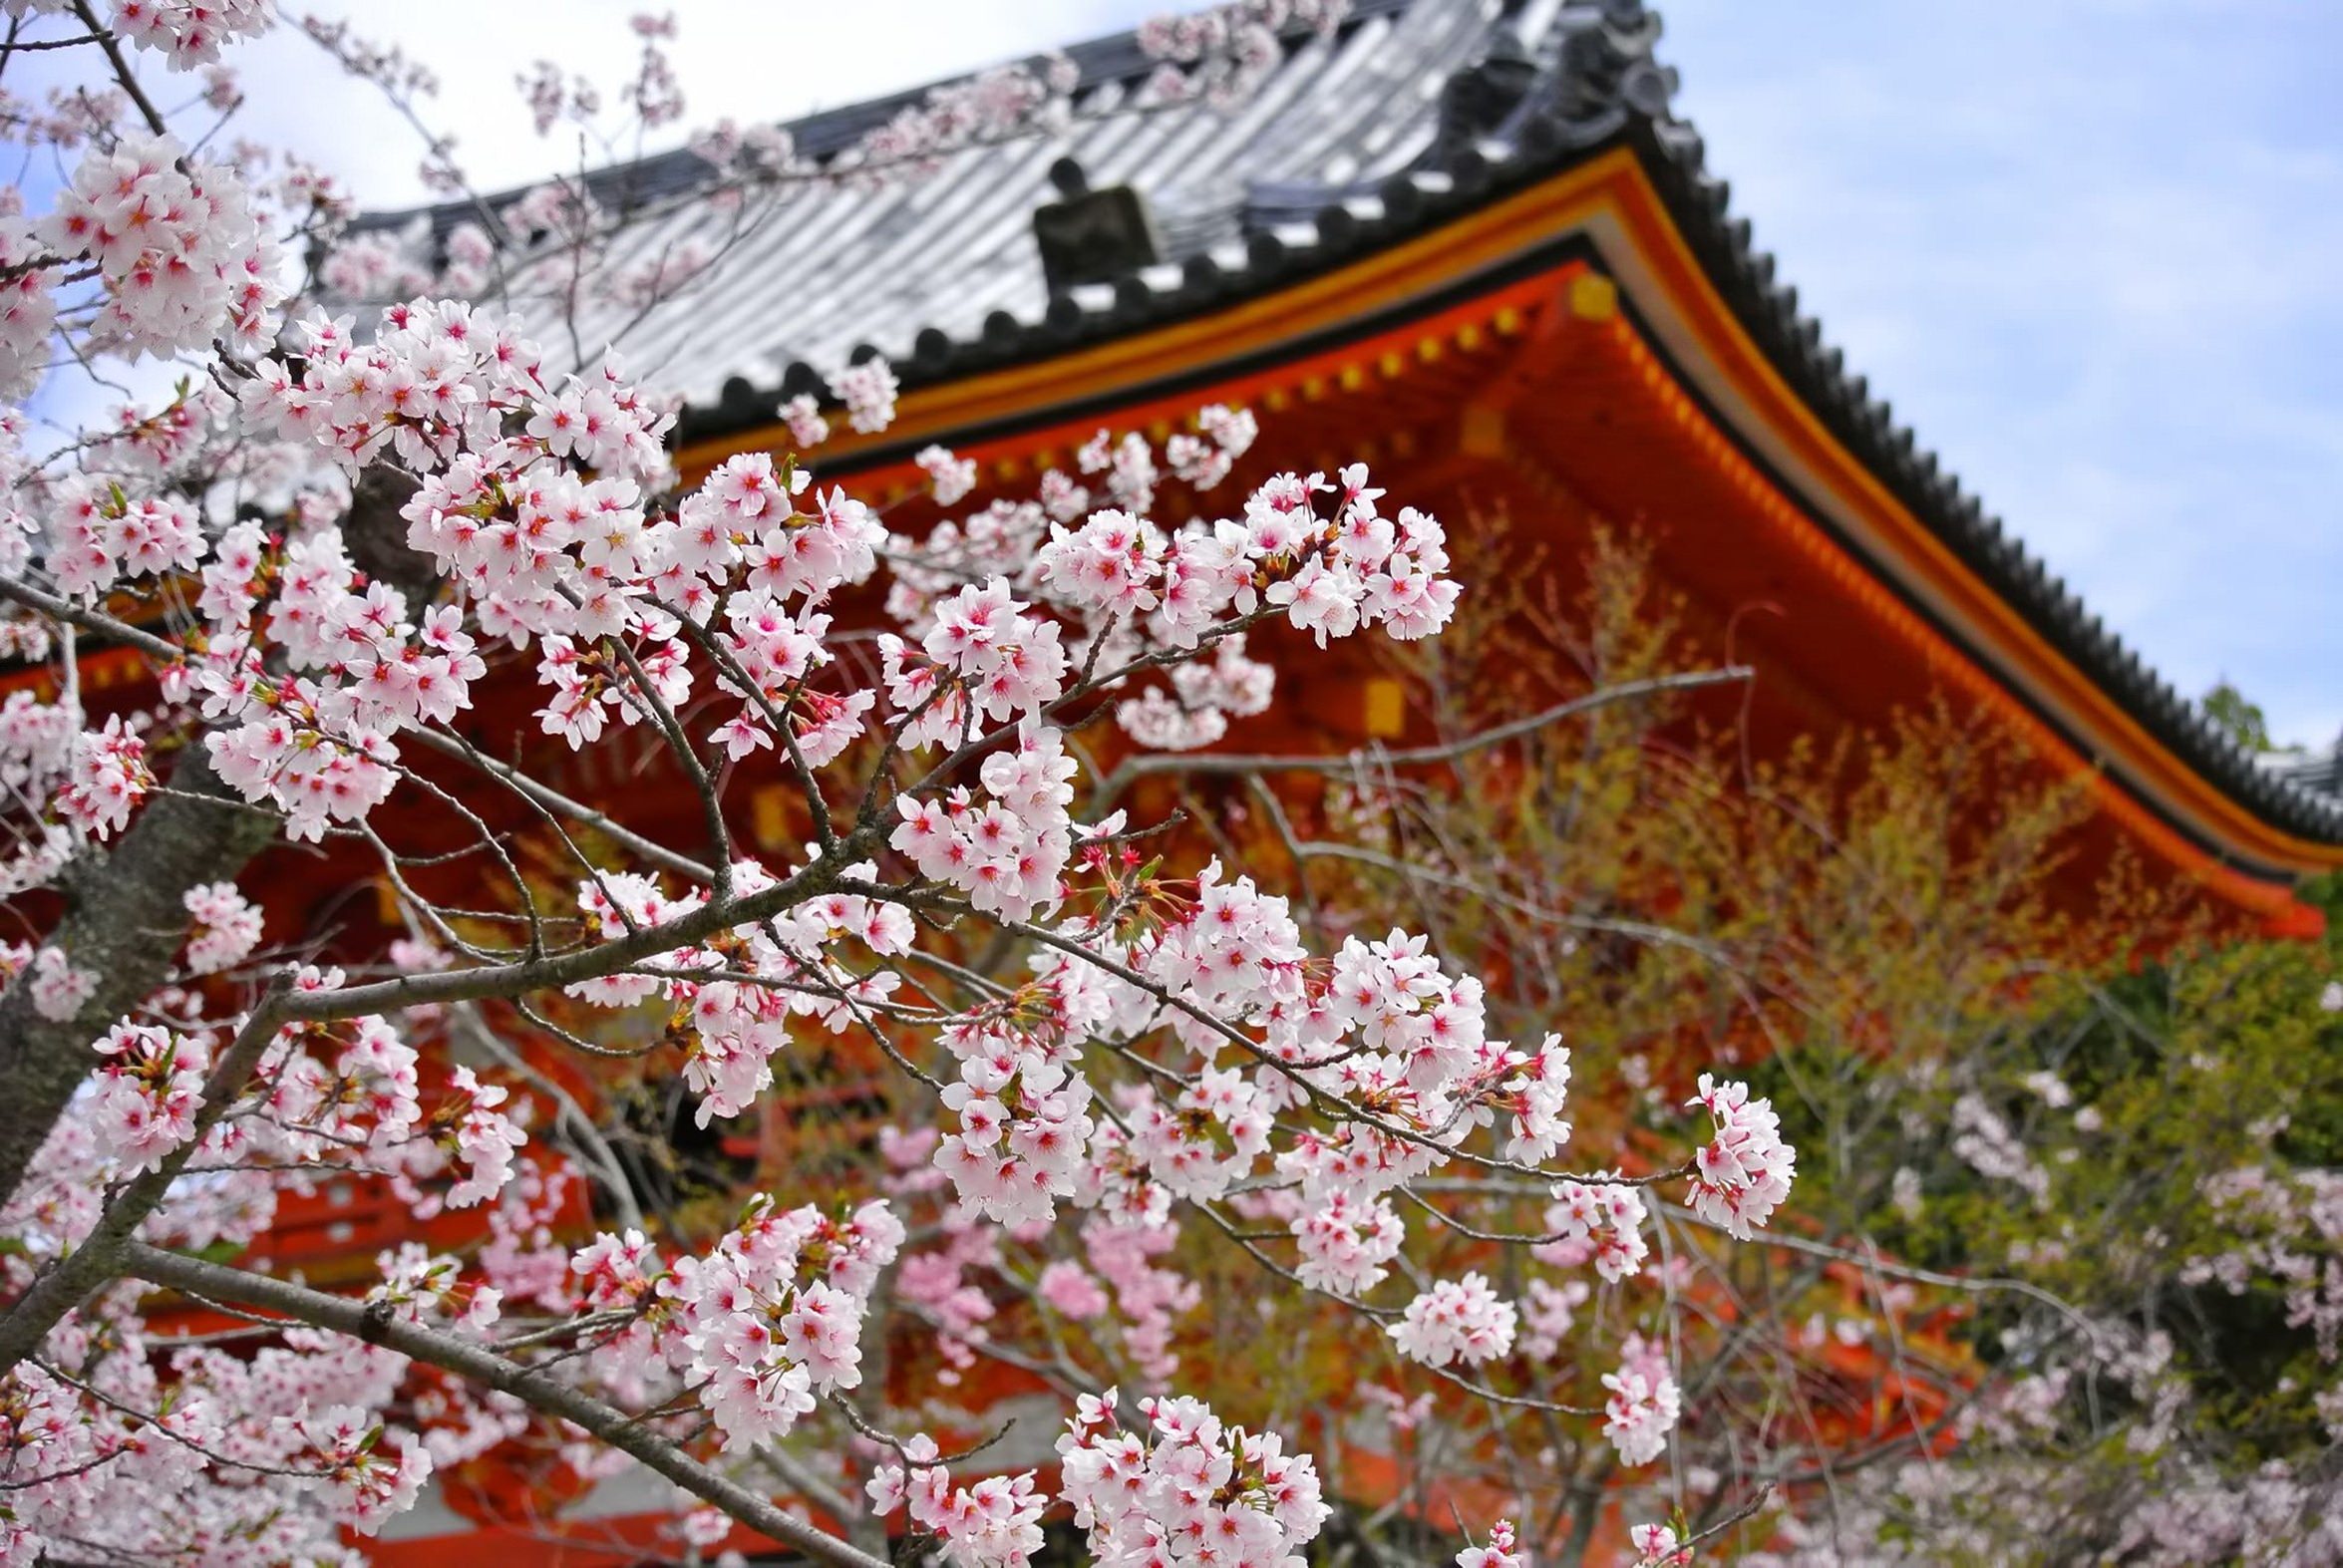 京都 仁和寺の桜の写真 画像 フリー素材 ぱくたそ